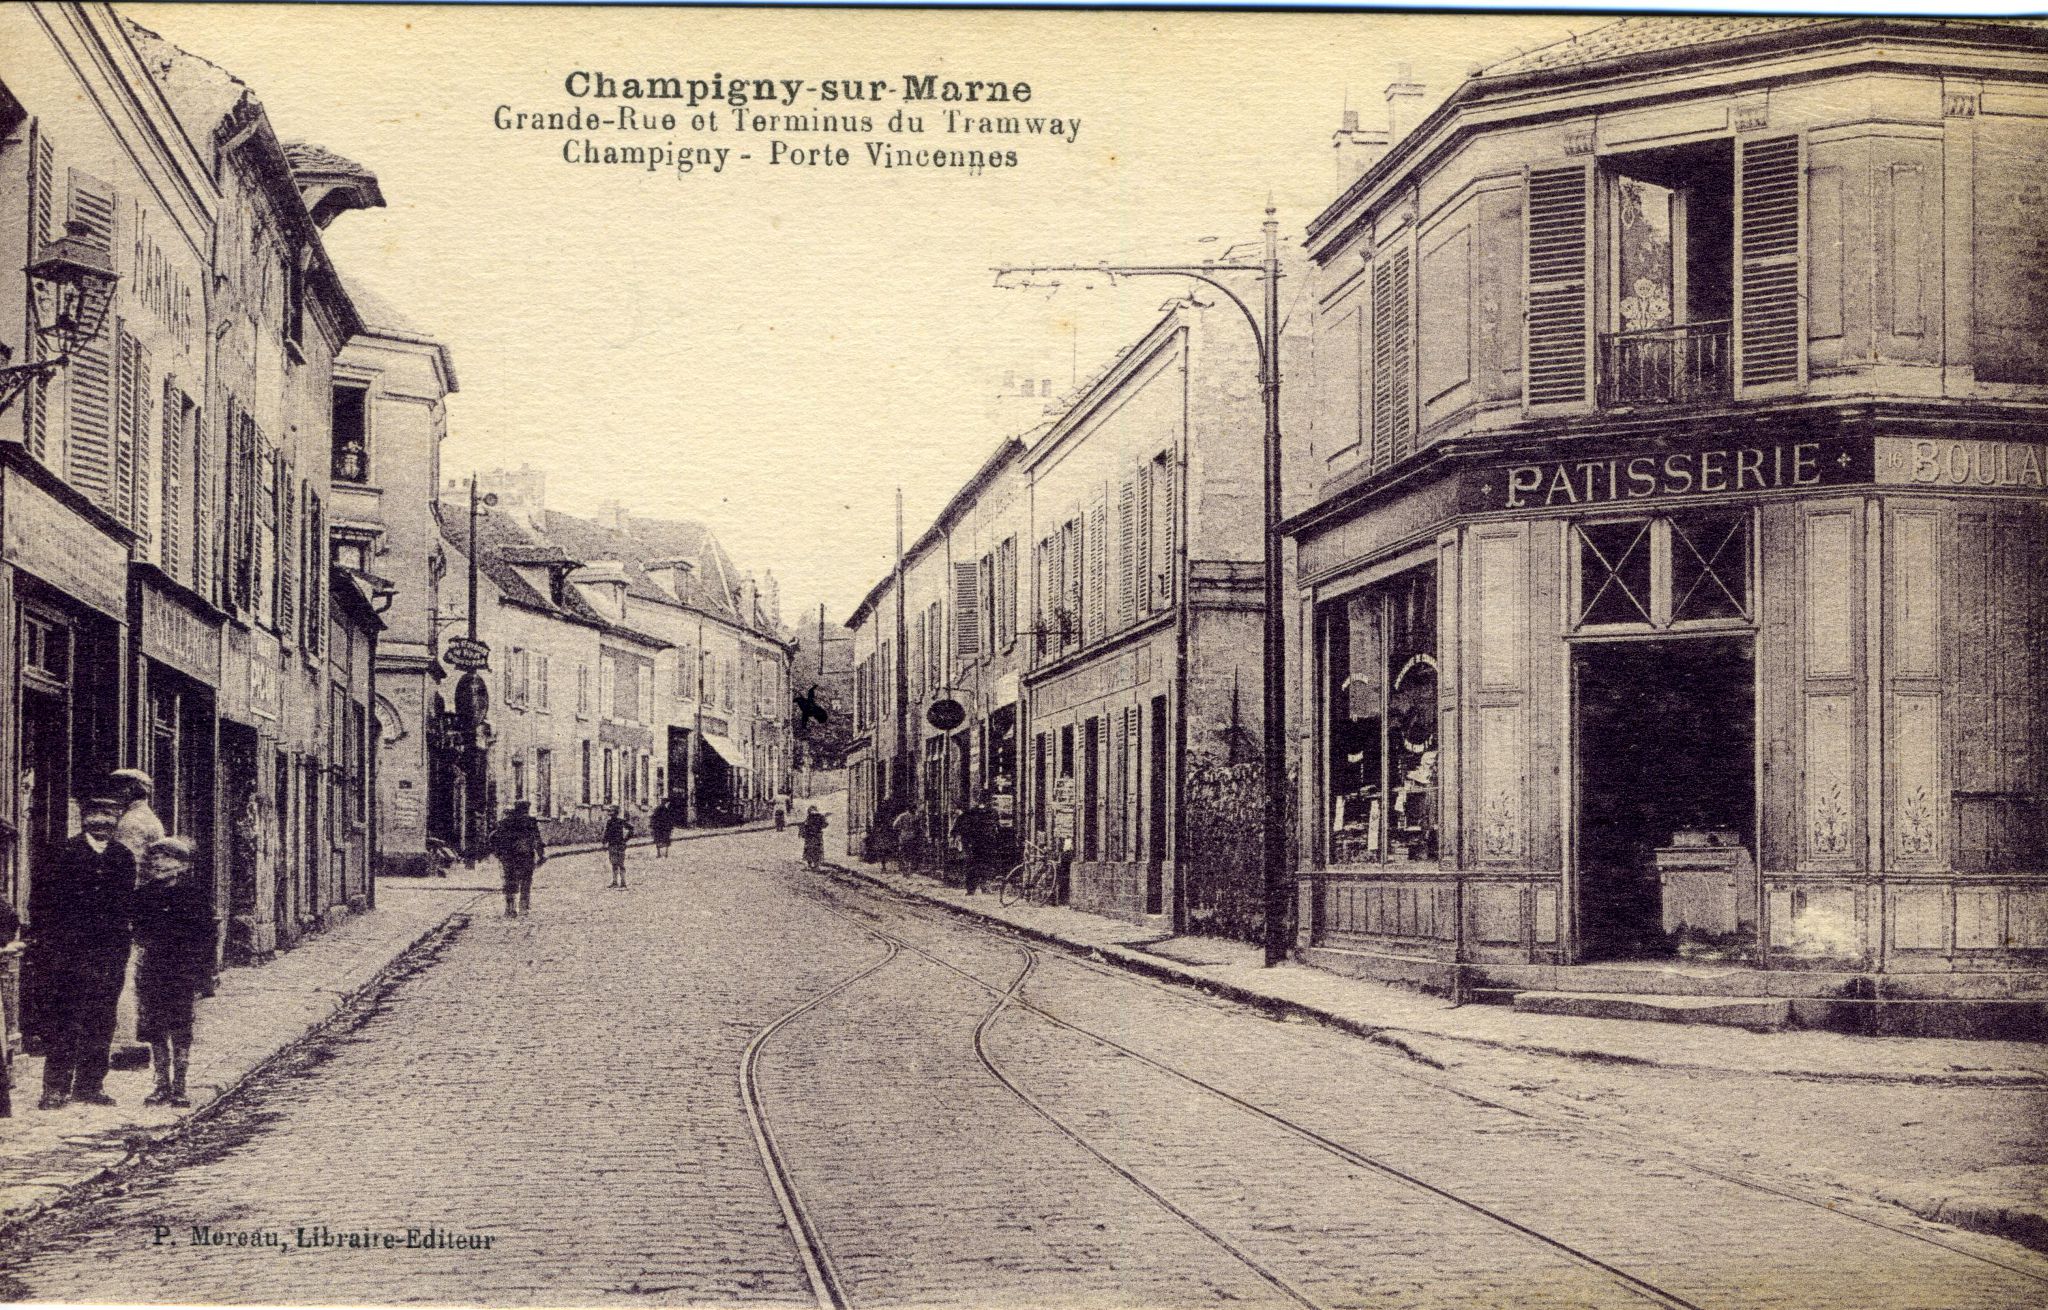 Champigny sur Marne, Grande rue et terminus du tramway Champigny-Porte de Vincennes